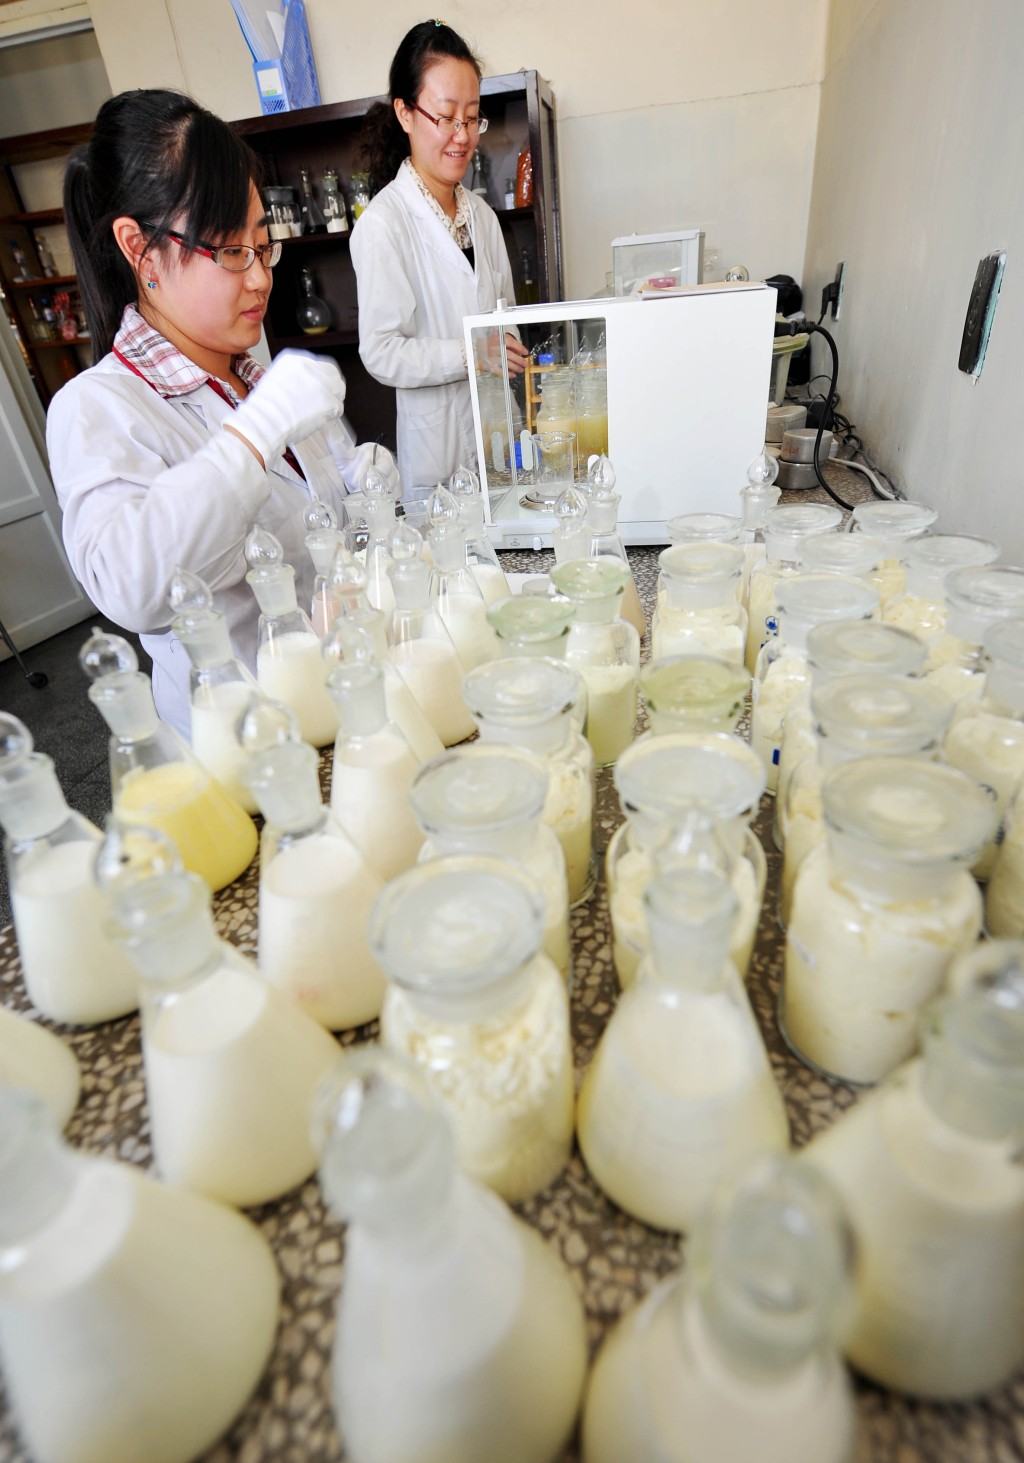 三鹿毒奶粉事件發生後，寧夏相關檢測機構24小時運作，抽檢全區所有乳品企業生產的所有批次。 新華社